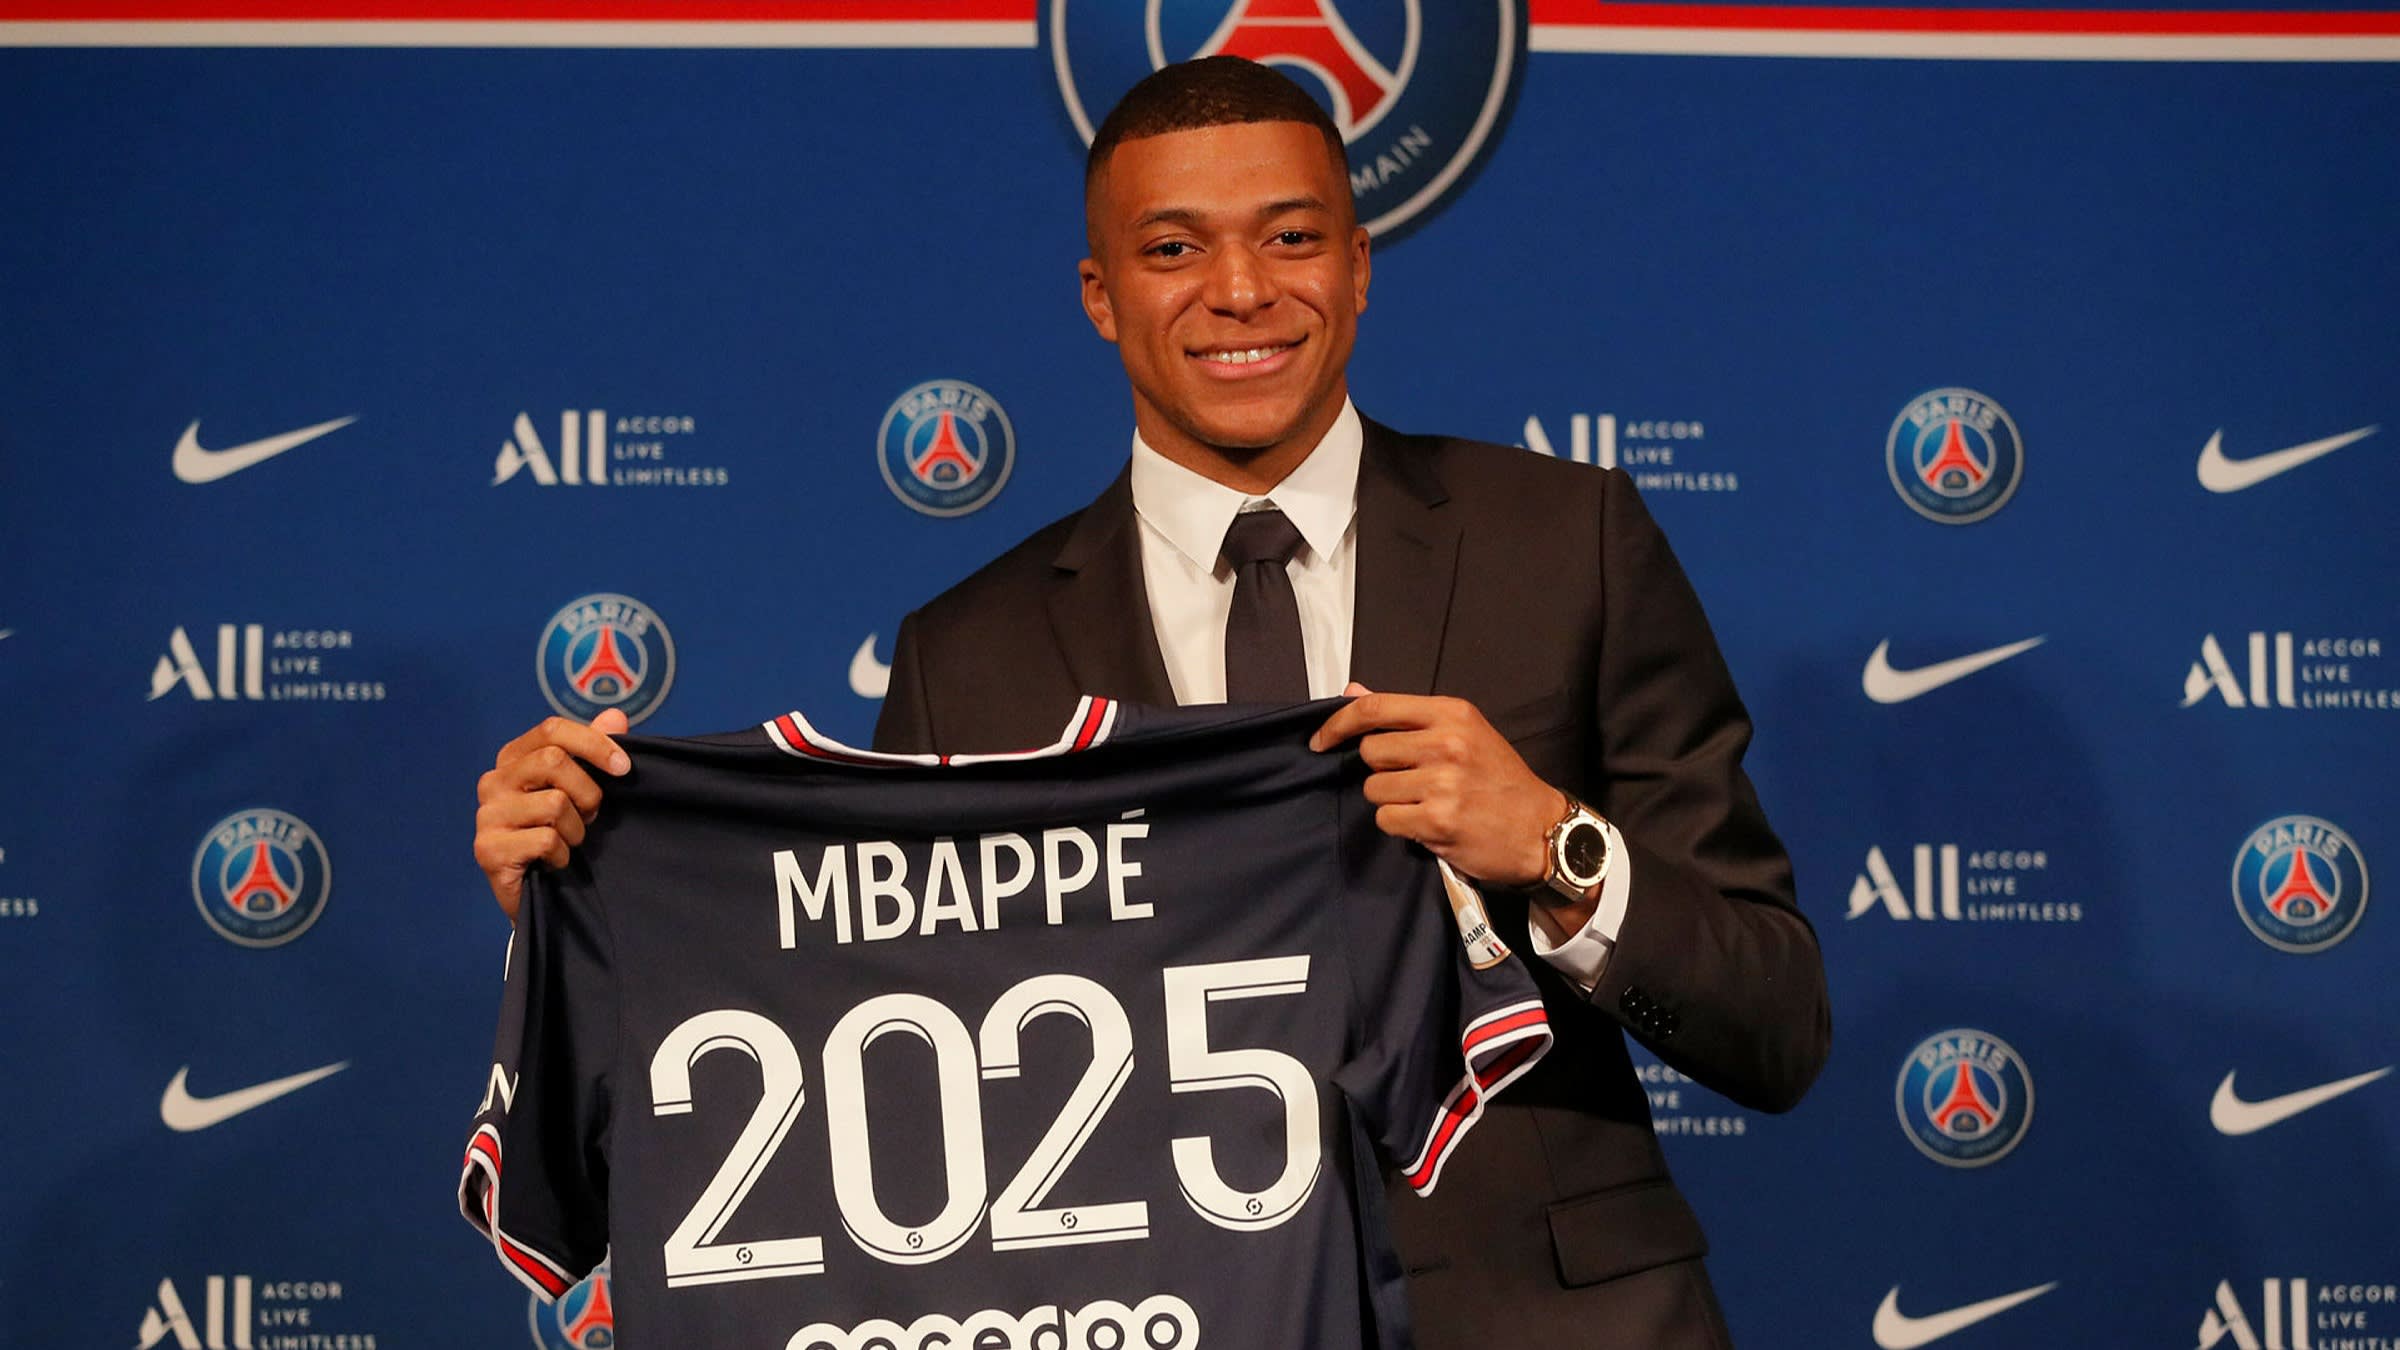 French star Kylian Mbappé backs NFT fantasy football start-up Sorare